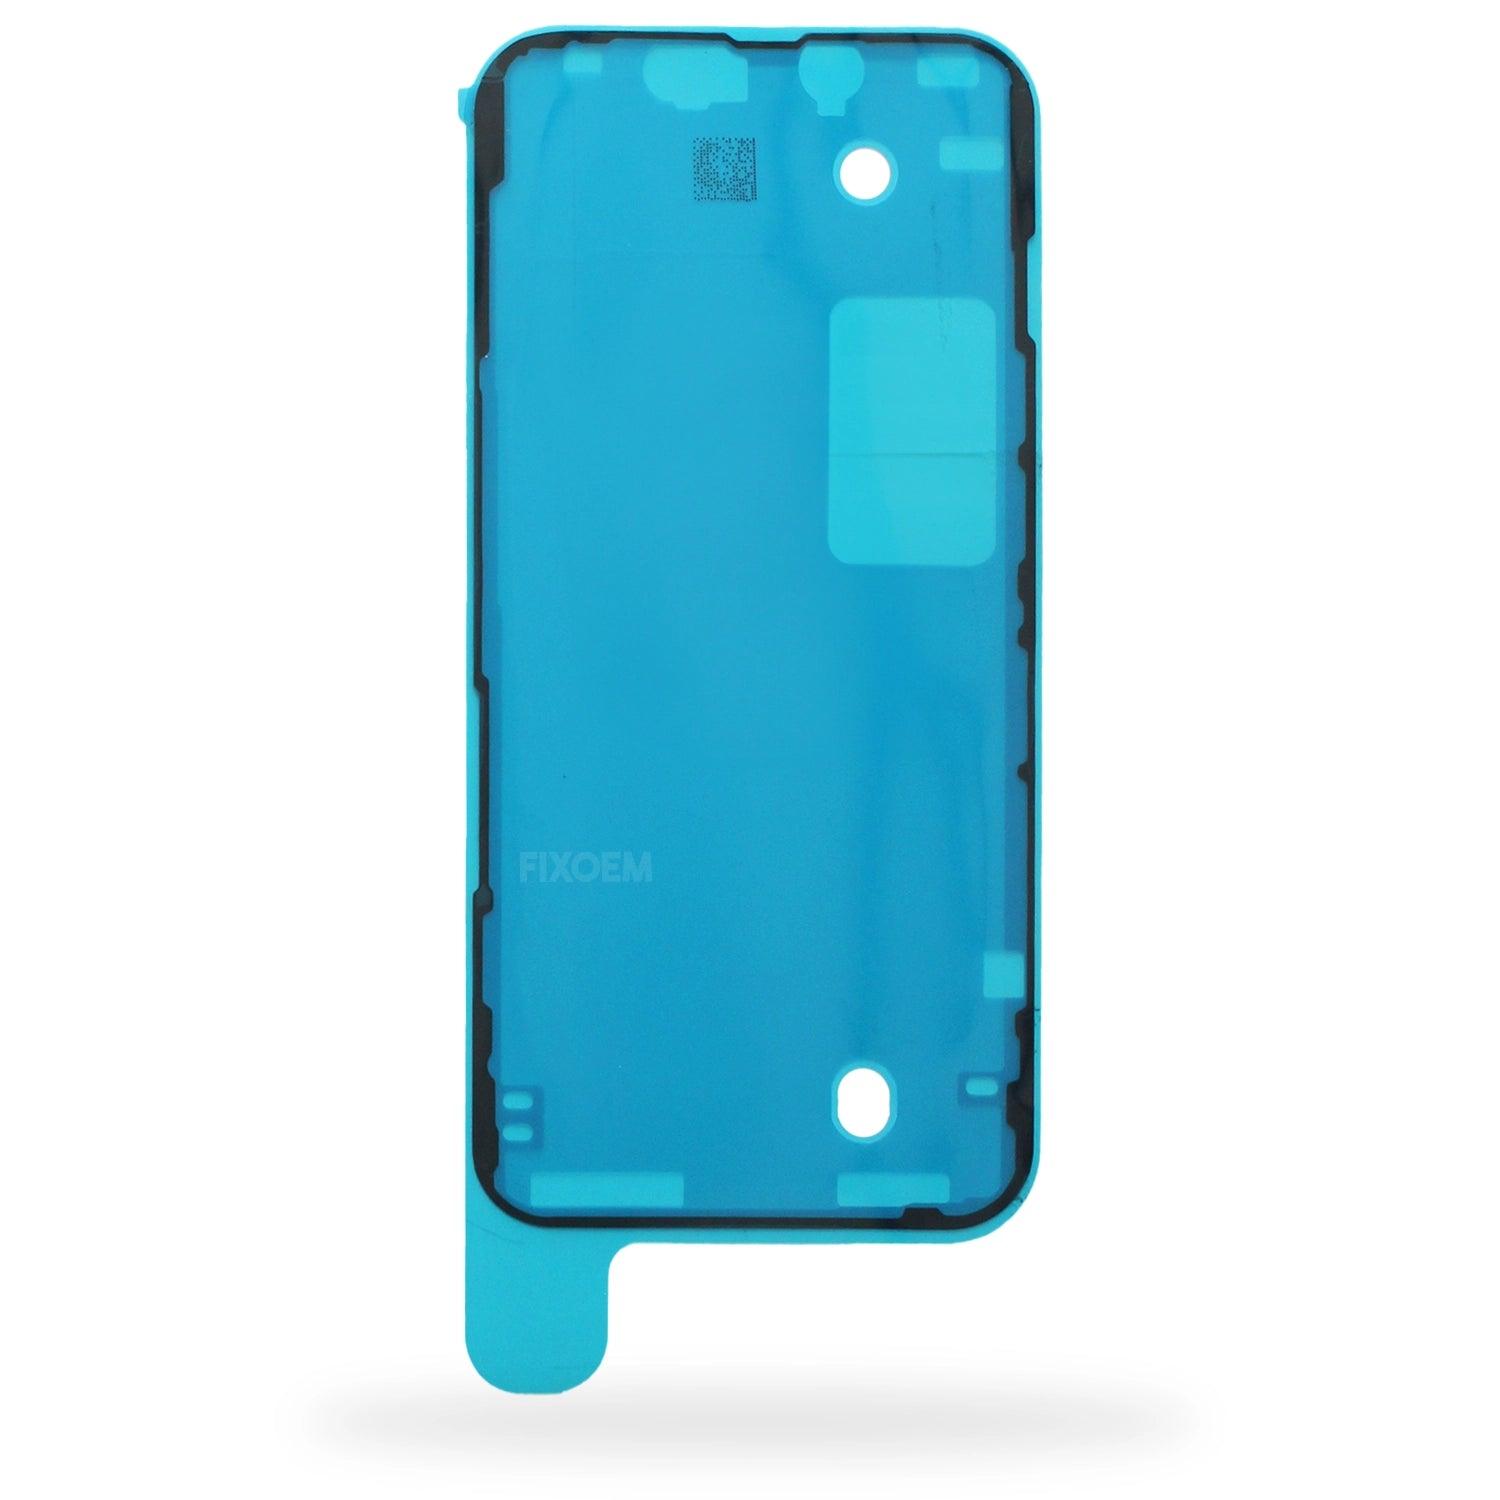 Pegamento Bisel Iphone Sello de Agua a solo $ 40.00 Refaccion y puestos celulares, refurbish y microelectronica.- FixOEM